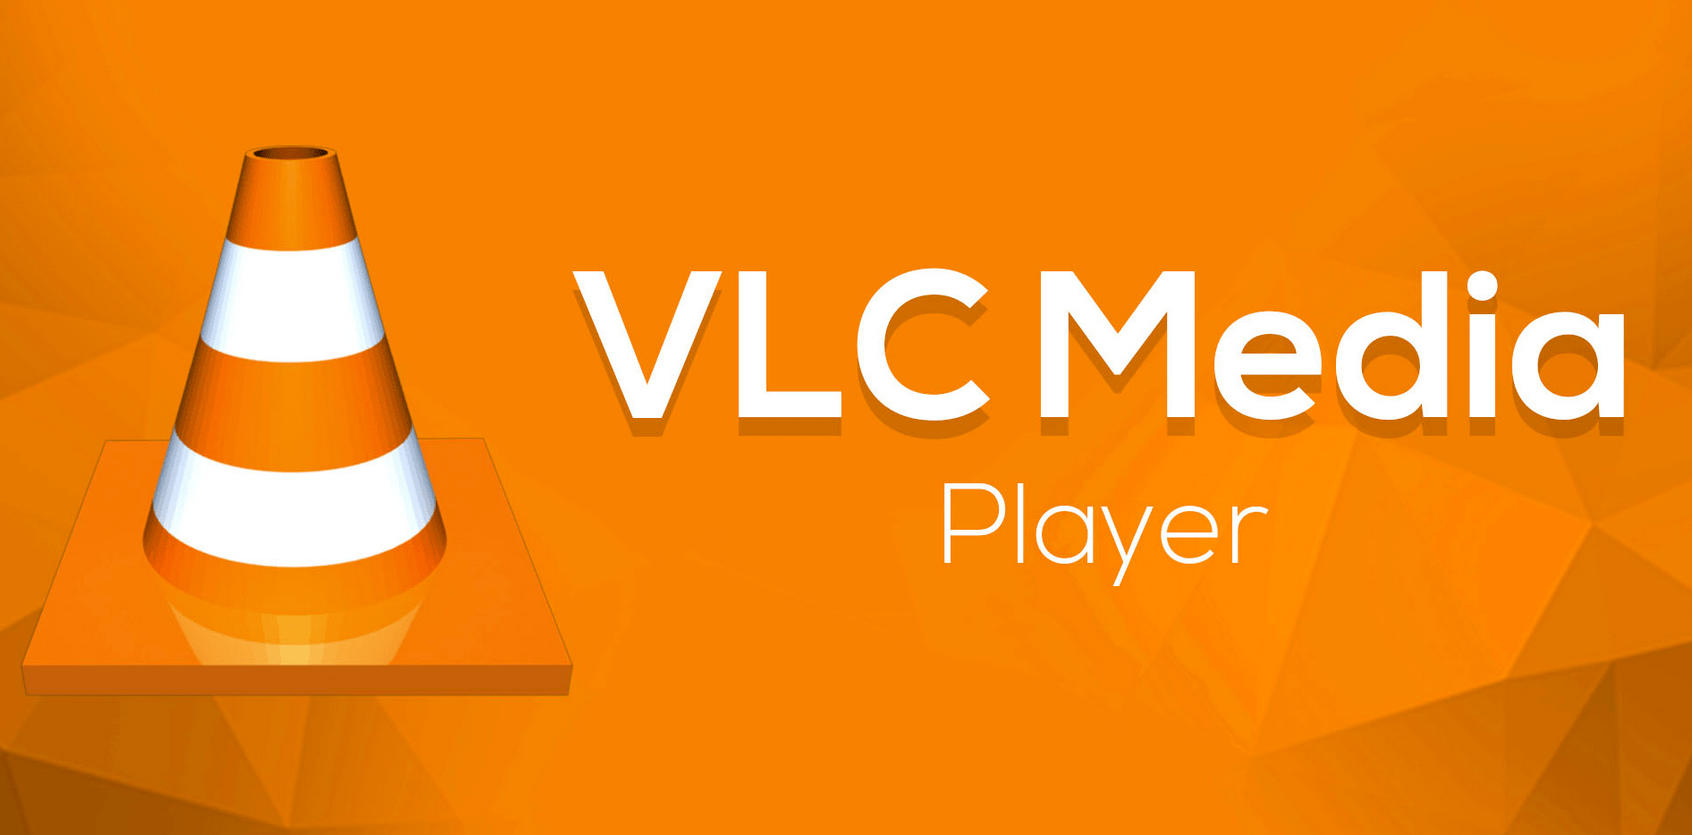 VLC Media Player скачать бесплатно для Windows 7, 8, 10, XP